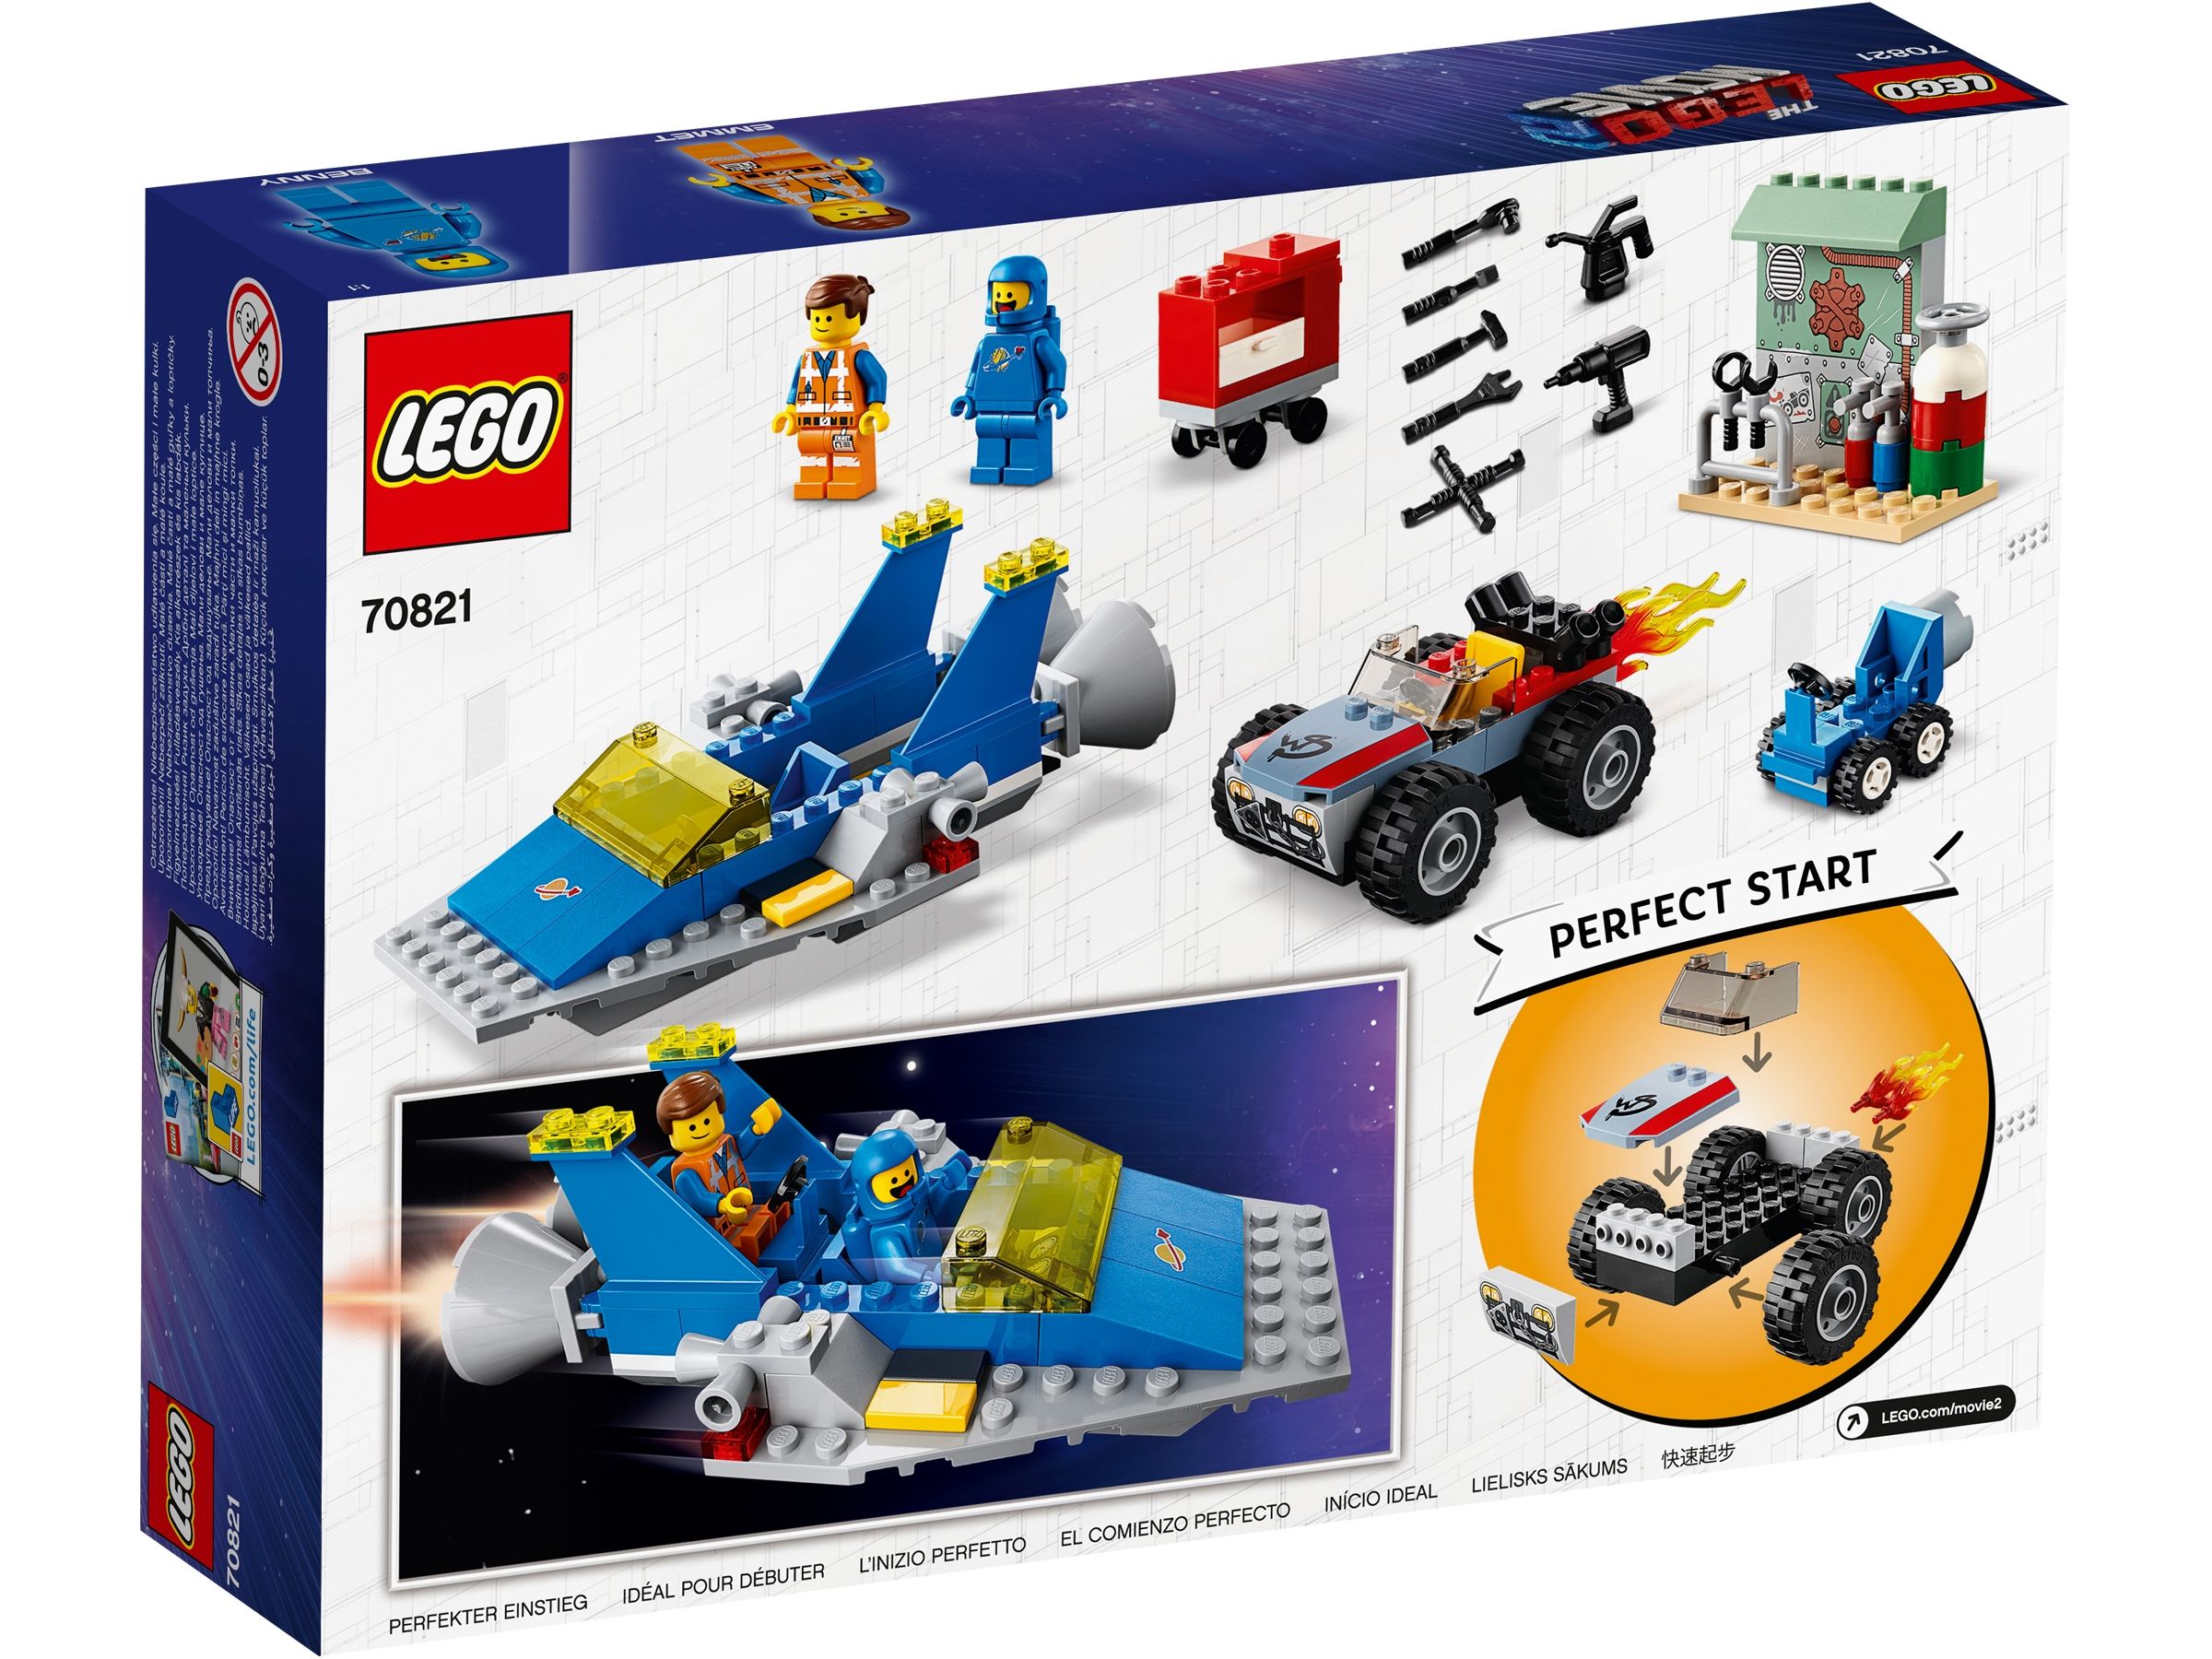 LEGO The LEGO Movie 2 70821 Emmets und Bennys Bau- und Reparaturwerkstatt! LEGO_70821_Box5_v29.jpg